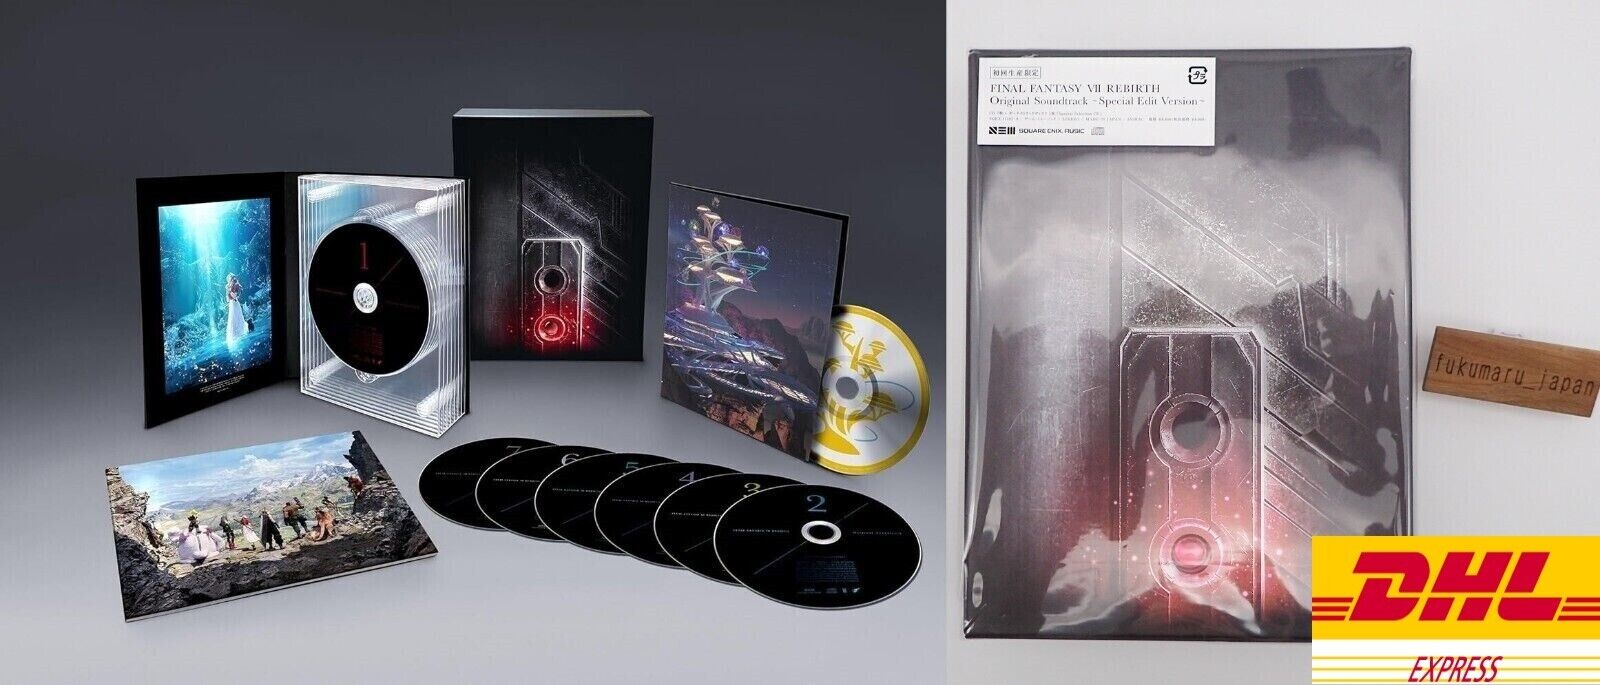 FINAL FANTASY VII REBIRTH Original Soundtrack Special Edit Version